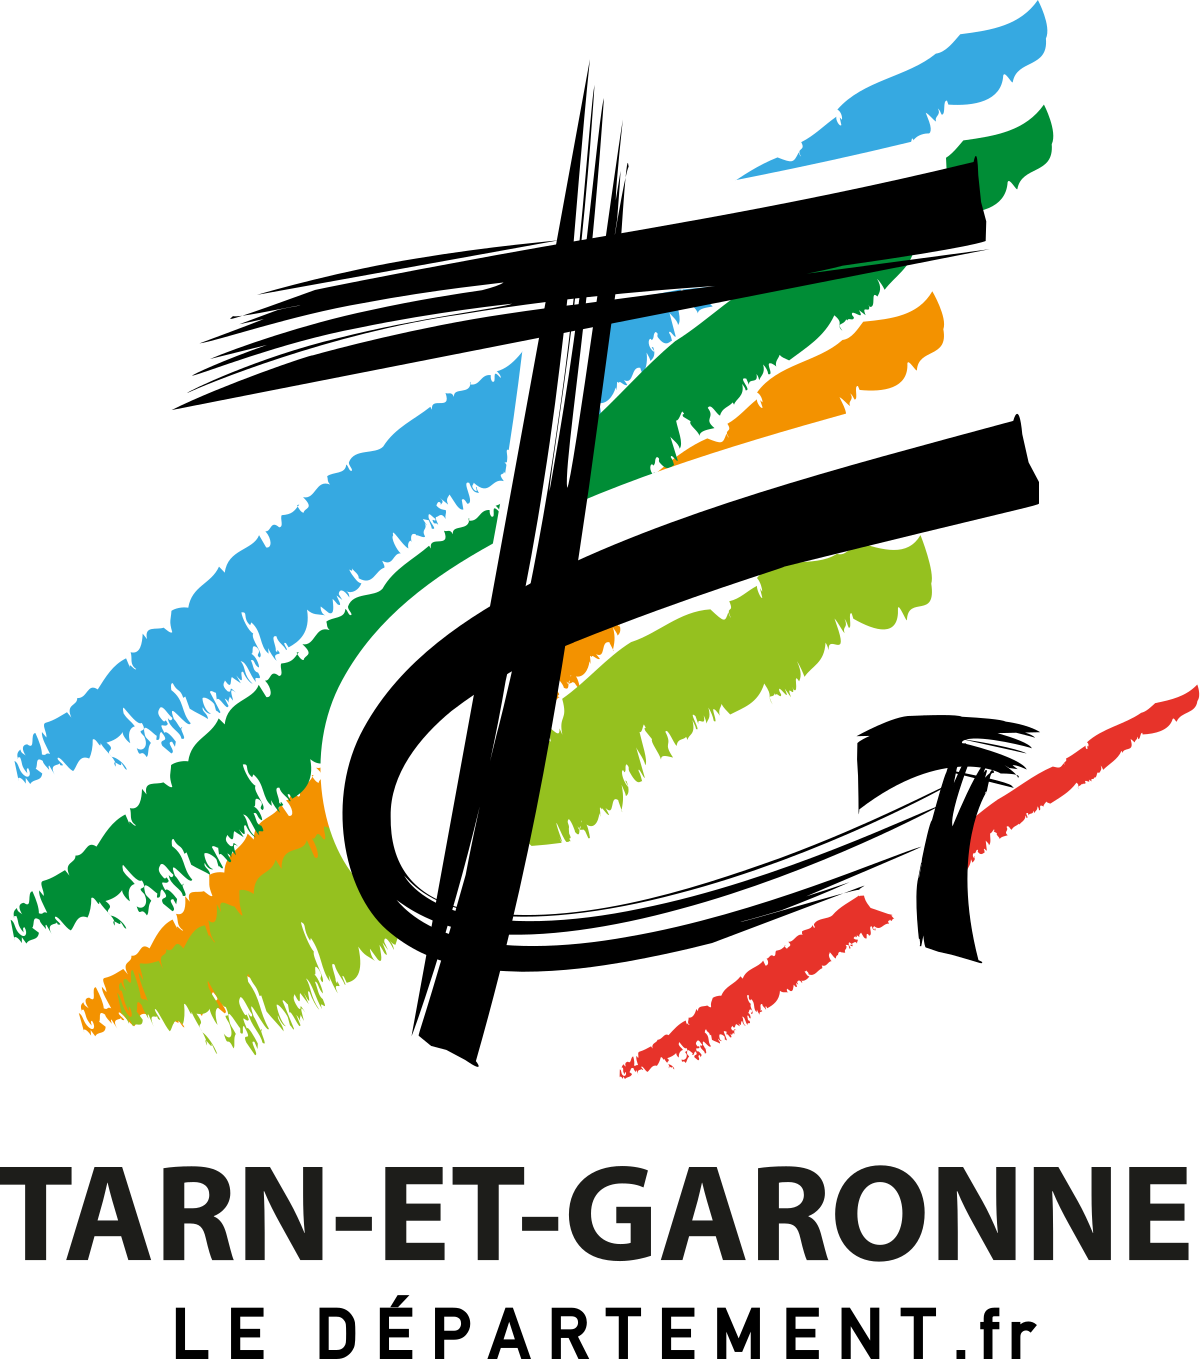 CD Tarn et Garonne